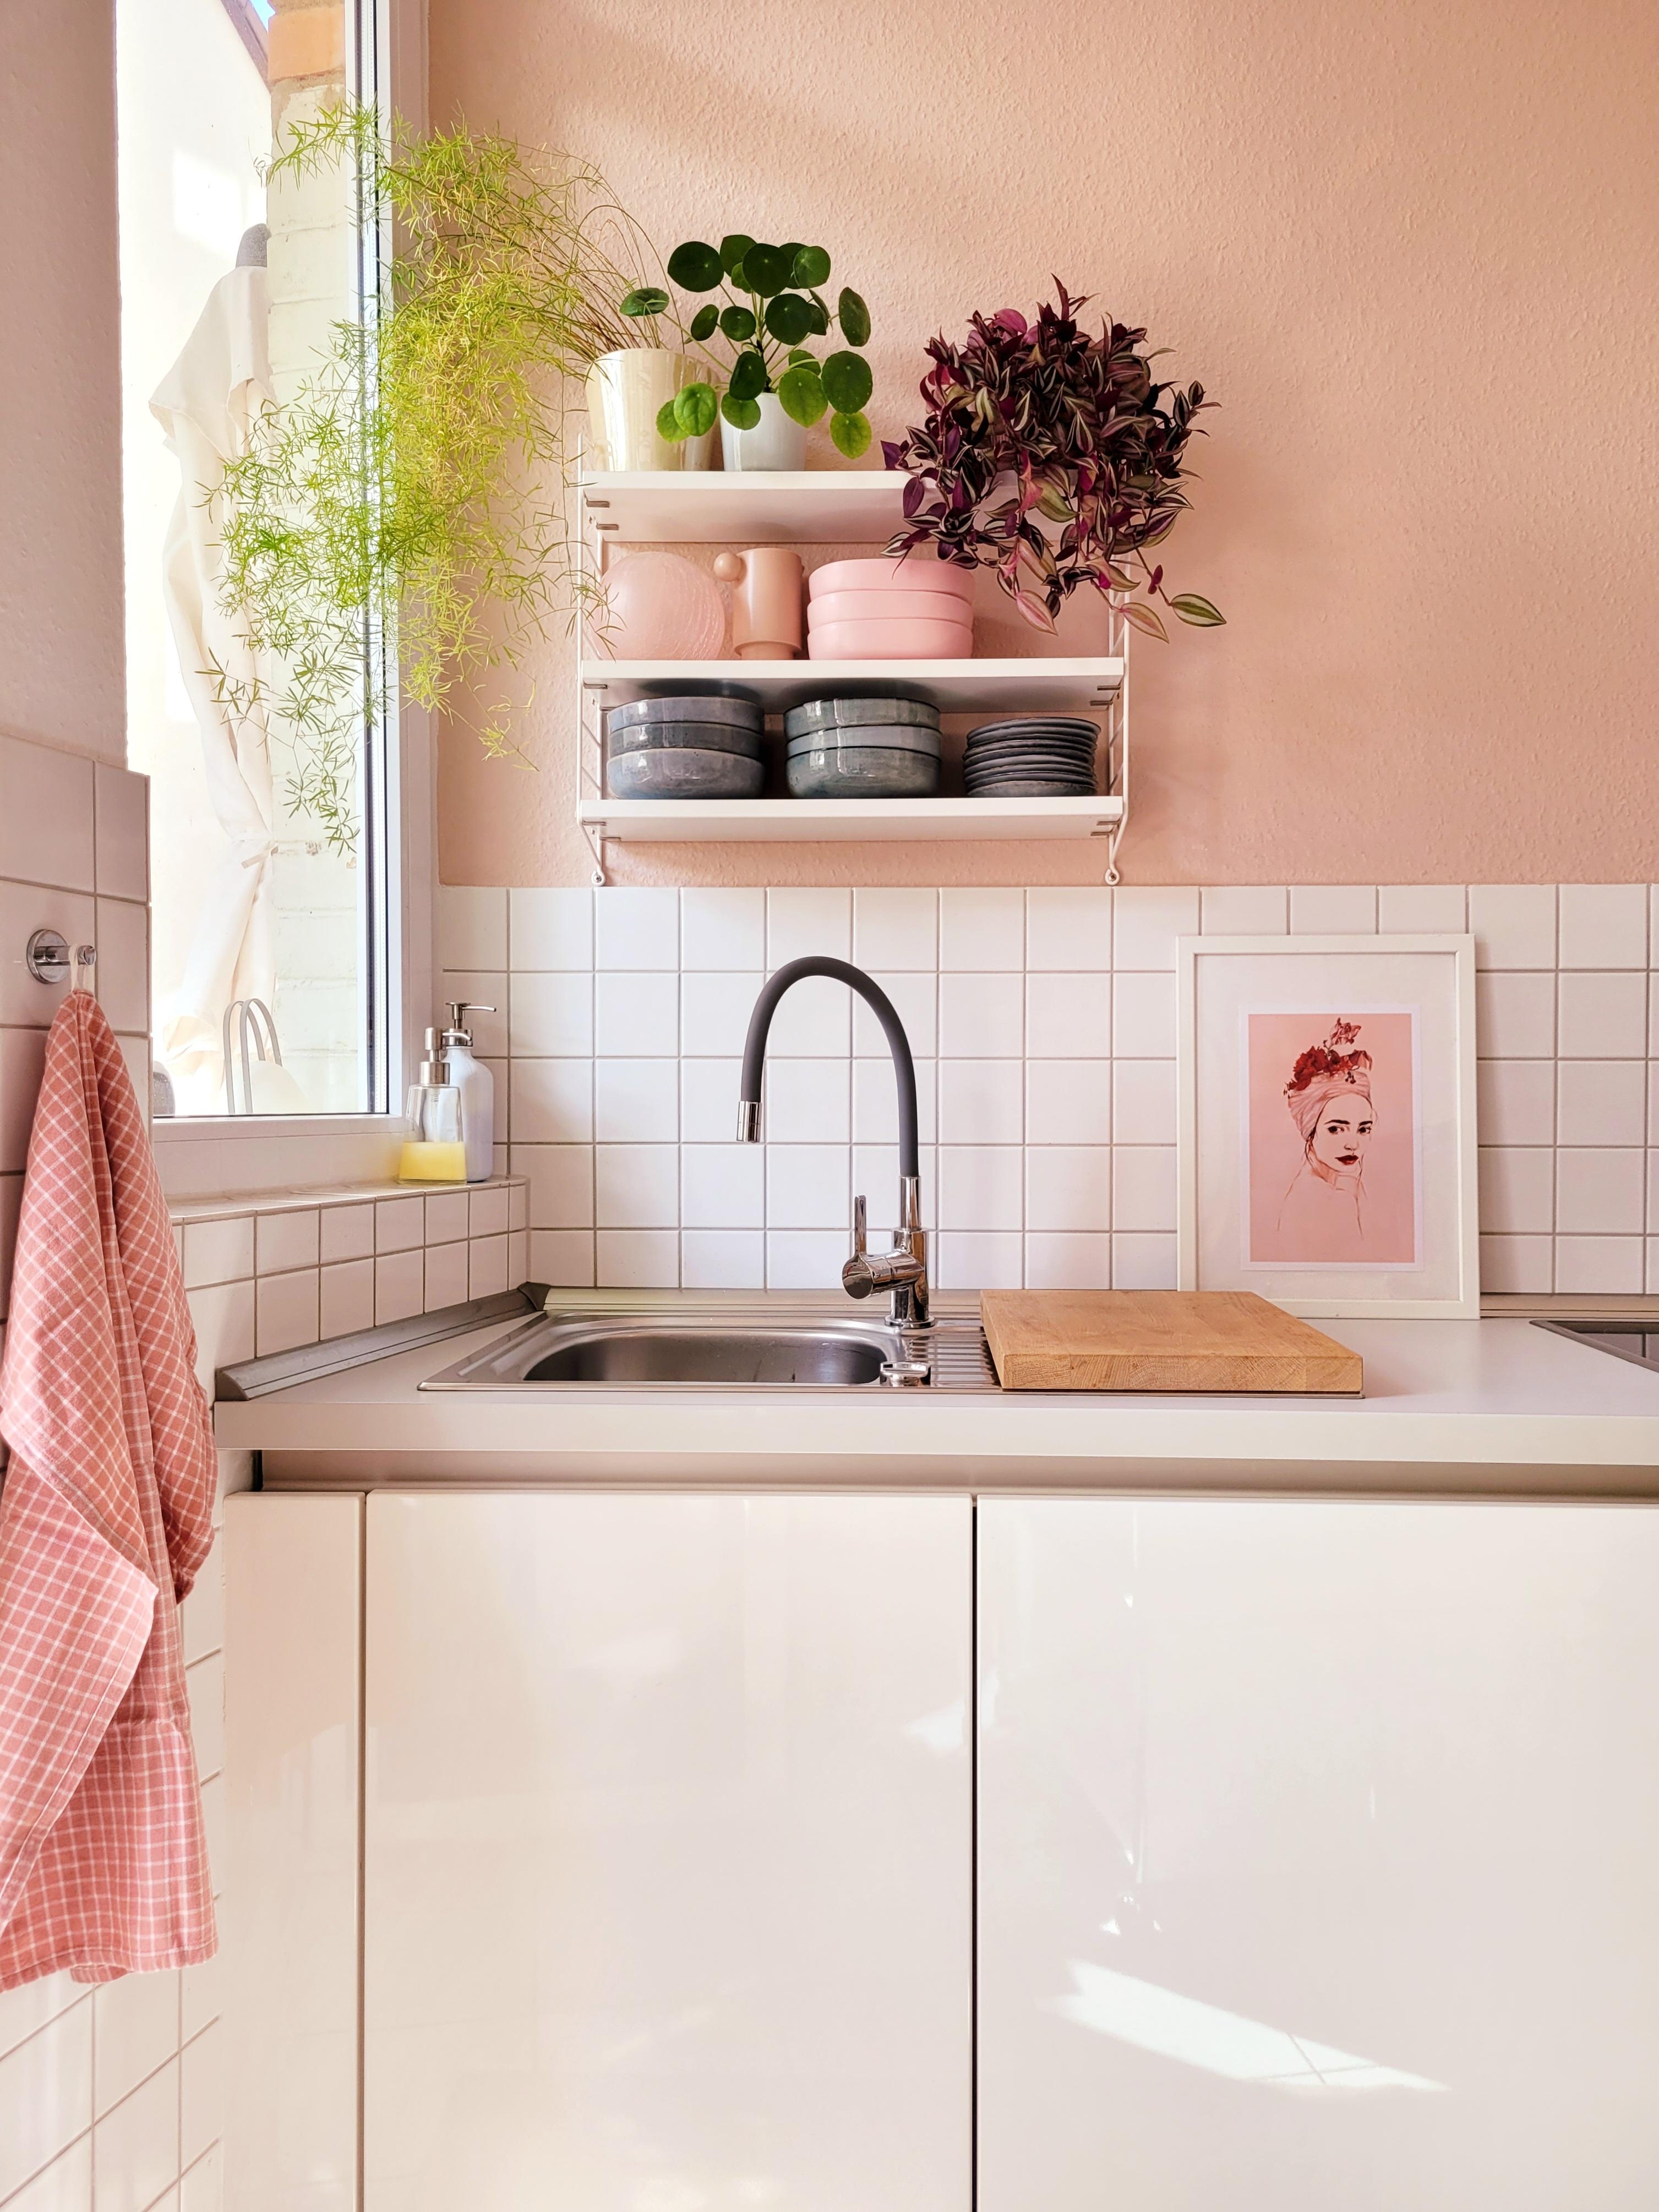 Mit aufgeräumter Küche geht alles leichter!
#Küche
#Altbau
#String
#summertime 
#Rosa
#colorfull 
